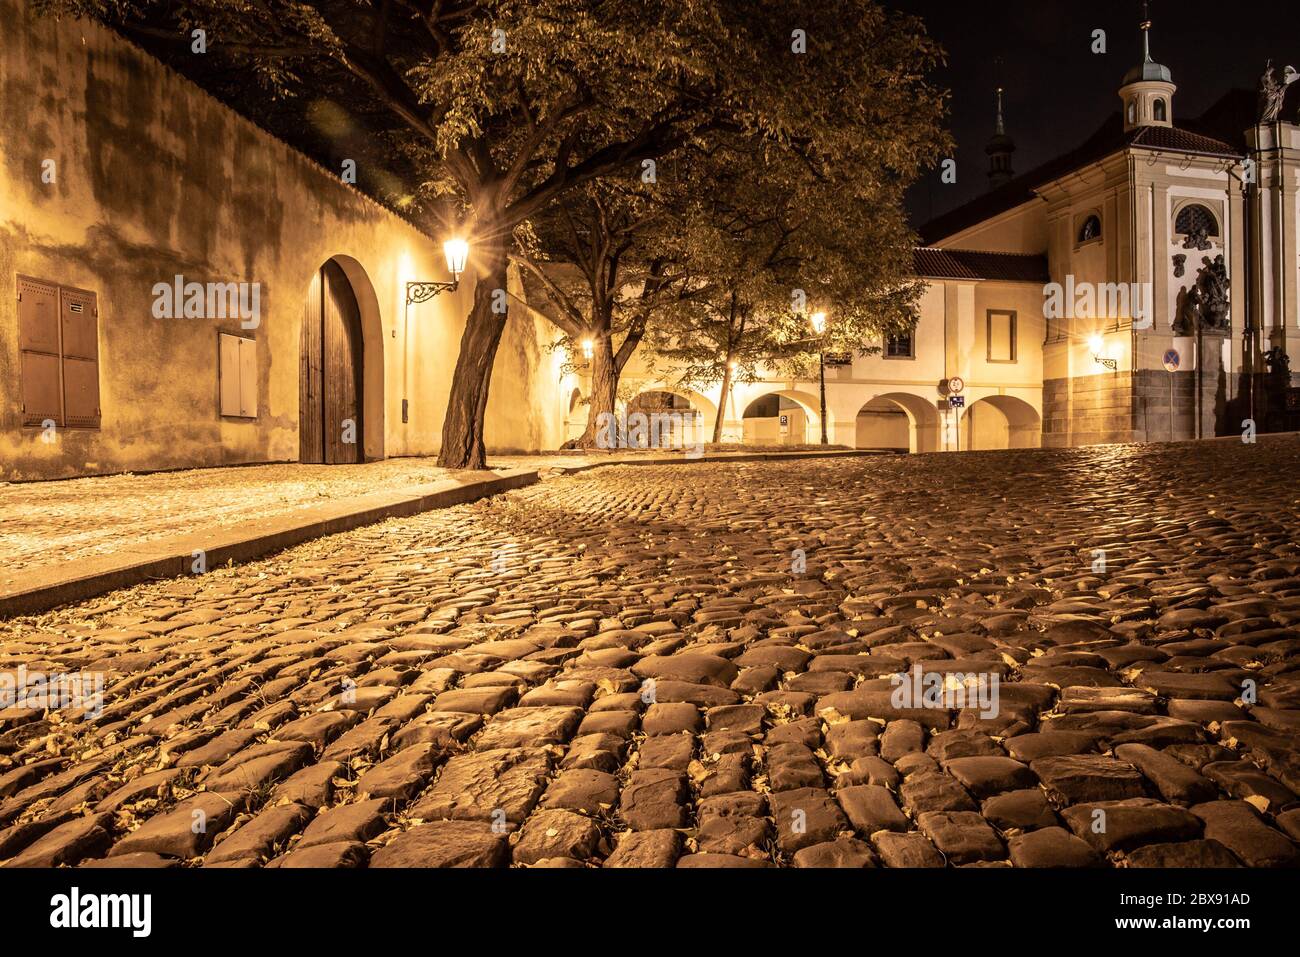 Calle adoquinada en la ciudad medieval antigua con casas iluminadas por lámparas de la calle de época, Novy Svet, Praga, República Checa. Foto nocturna. Foto de stock